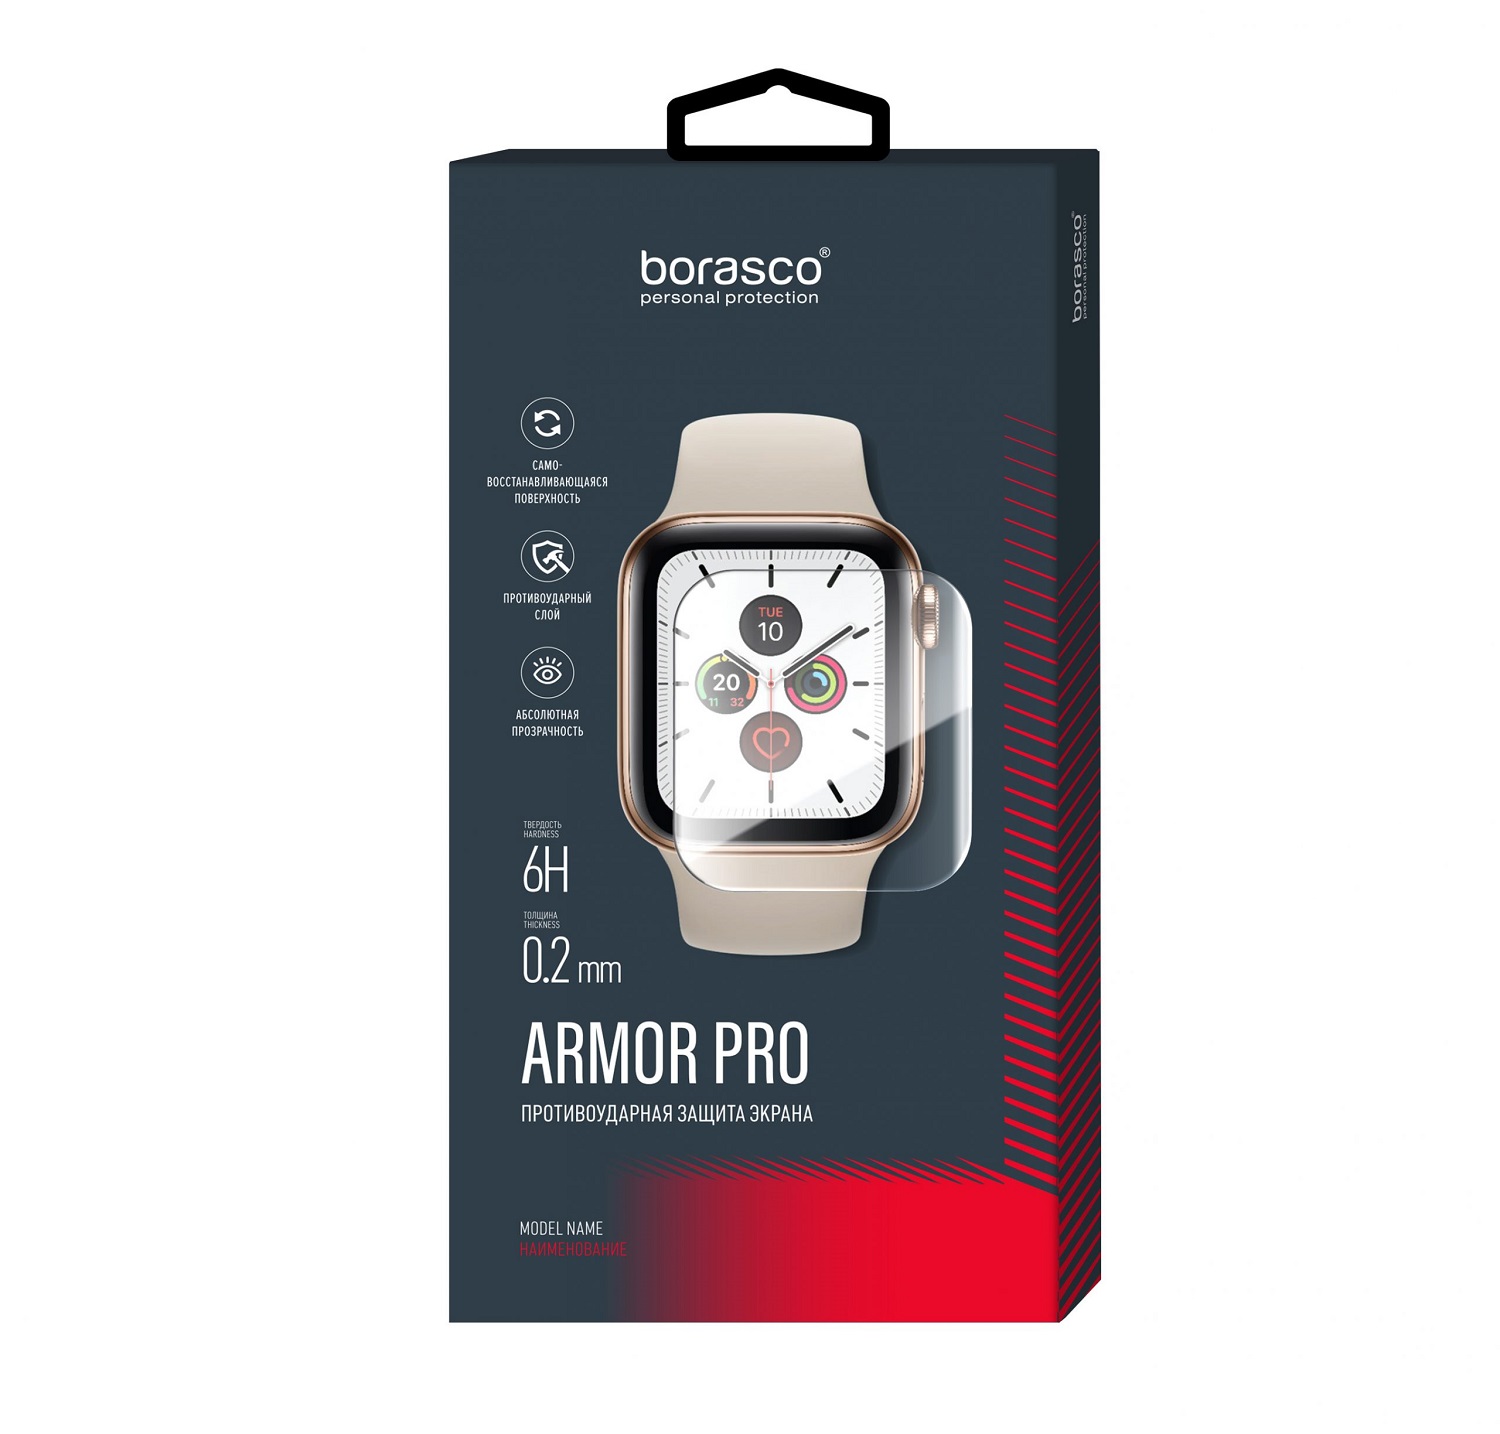 Защита экрана BoraSCO Armor Pro для Huawei Watch fit защита экрана borasco armor pro для amazfit pace